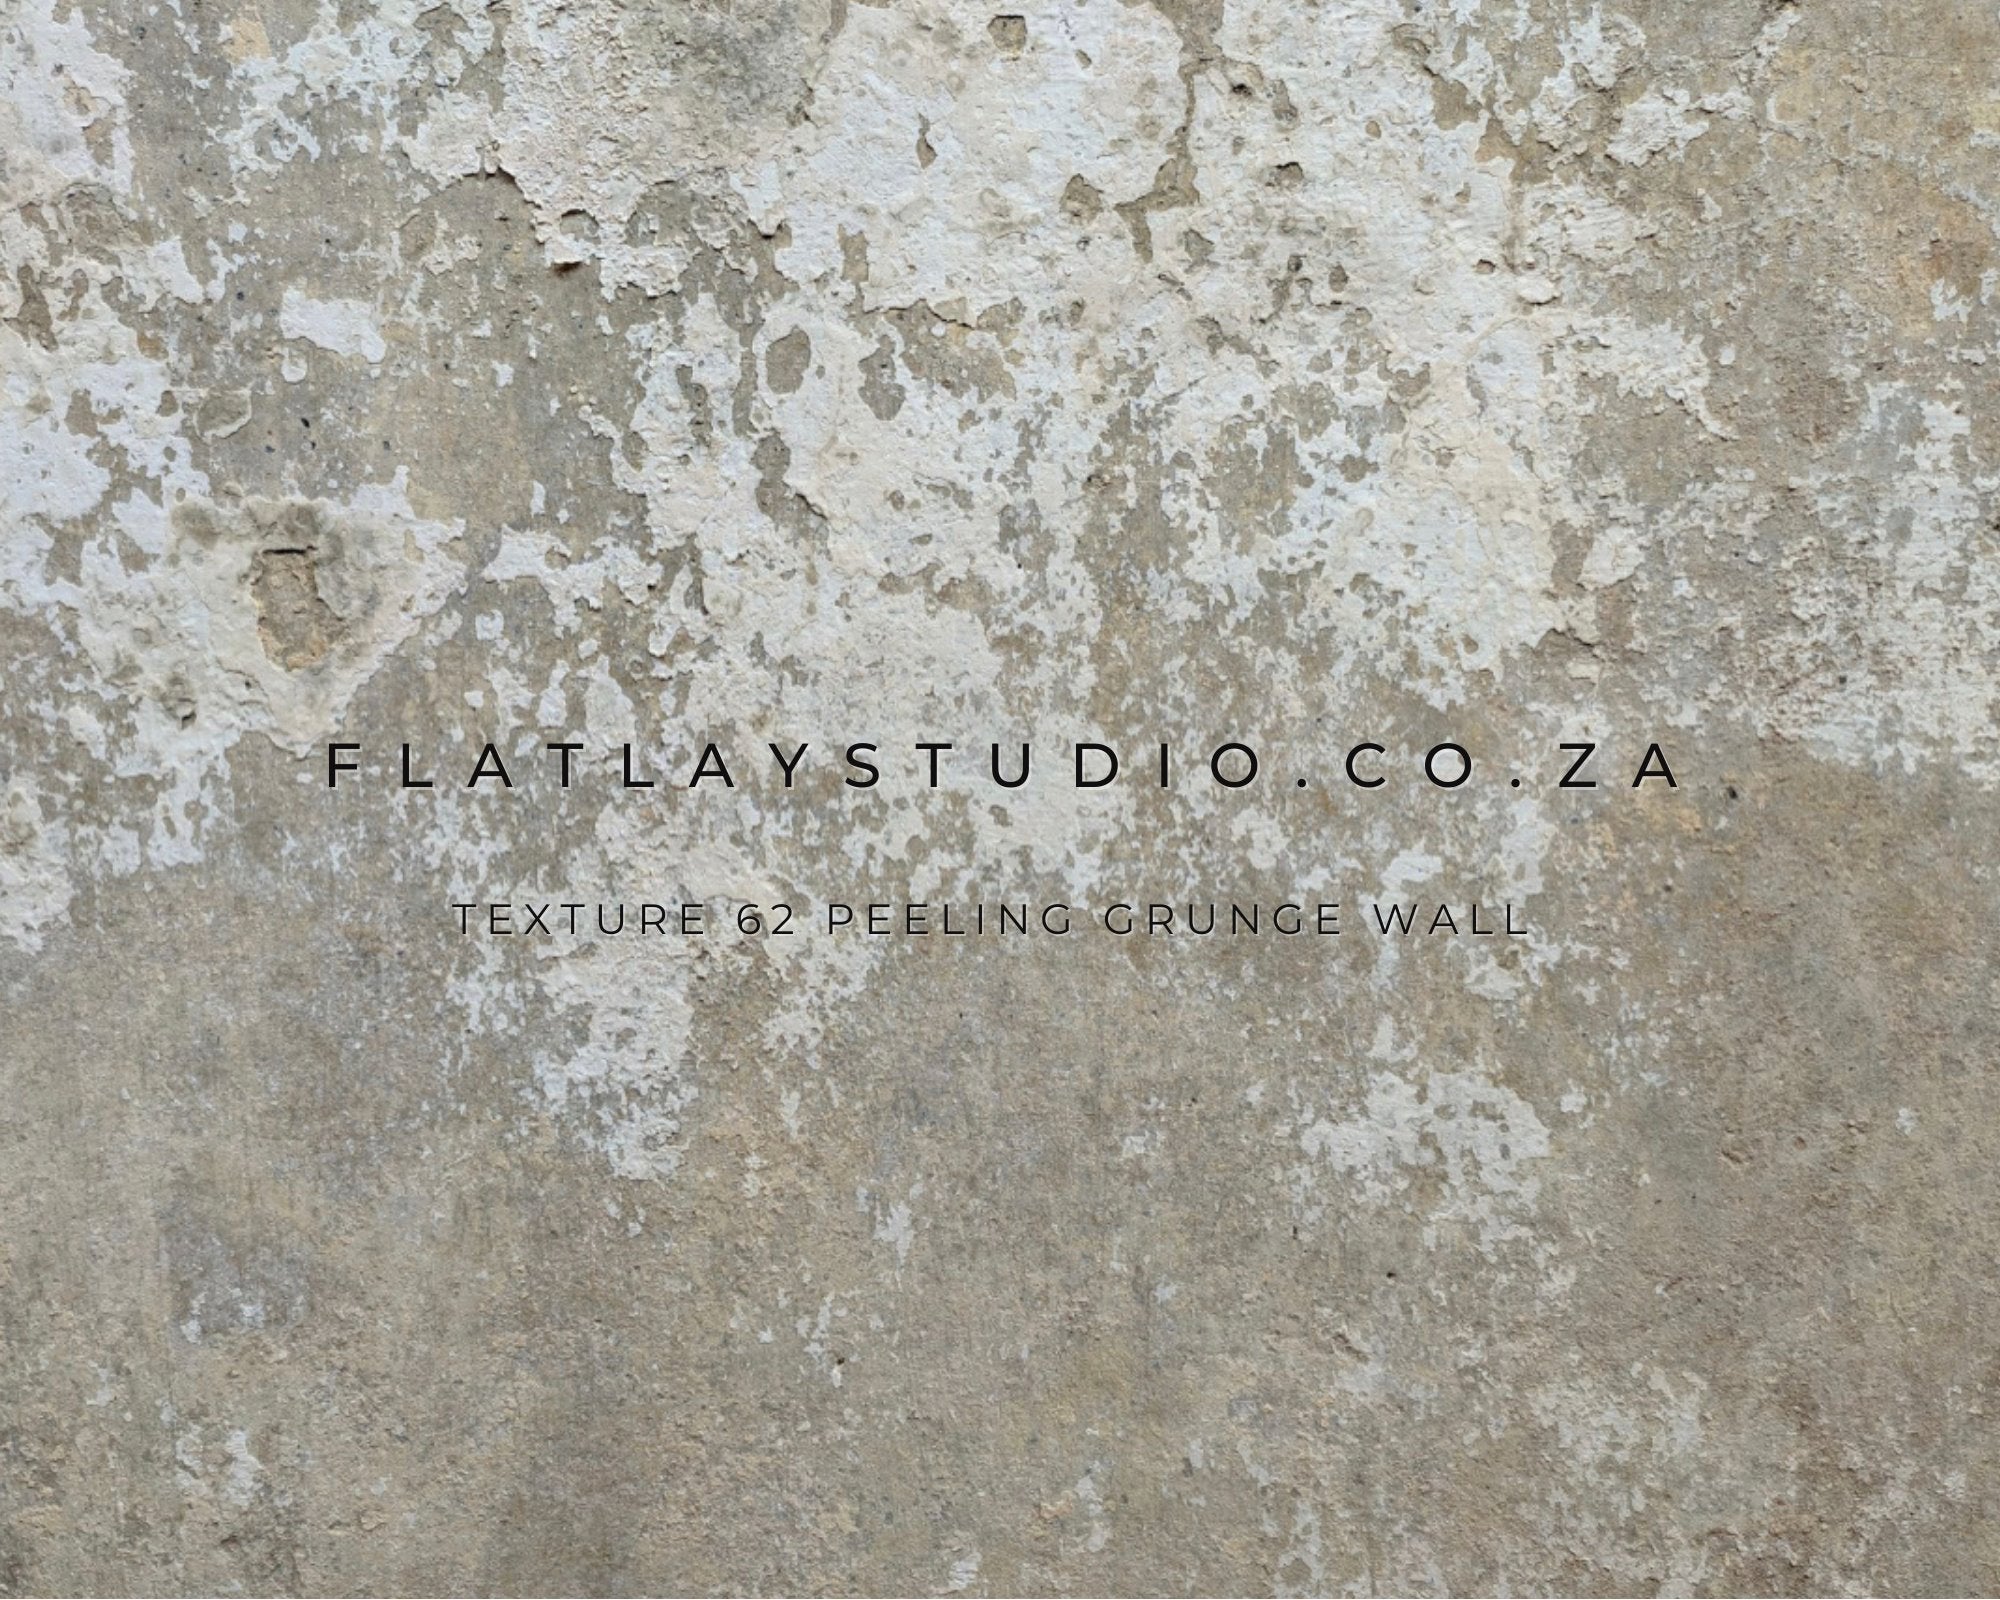 Texture 62 Peeling Grunge Wall - FlatlayStudio Flatlay Styling Board